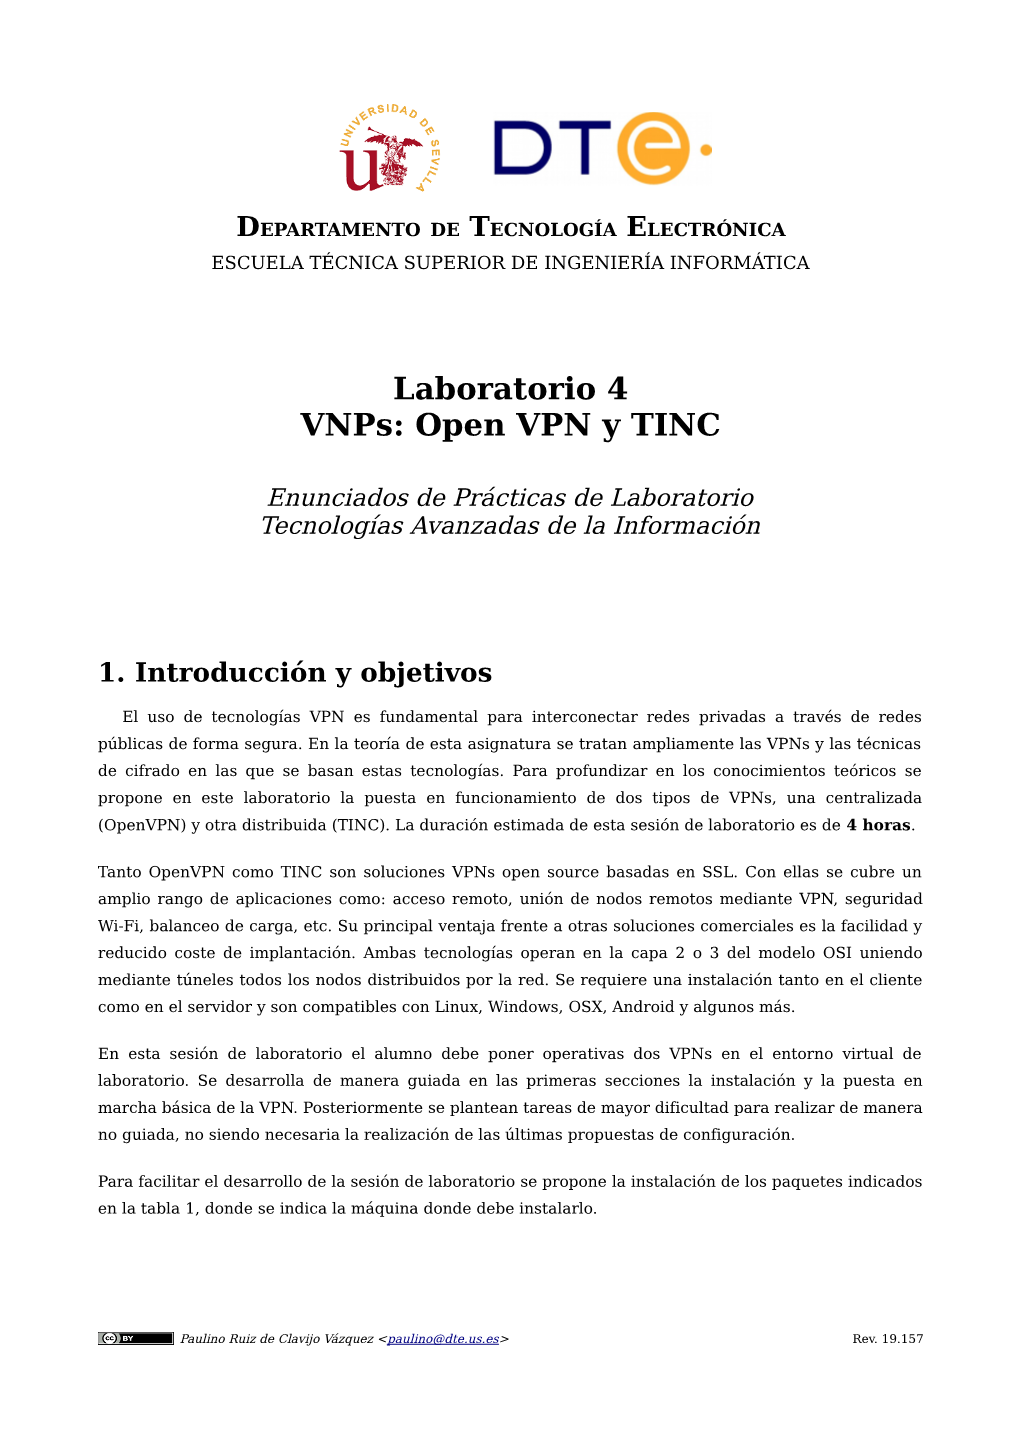 Laboratorio 4 Vnps: Open VPN Y TINC